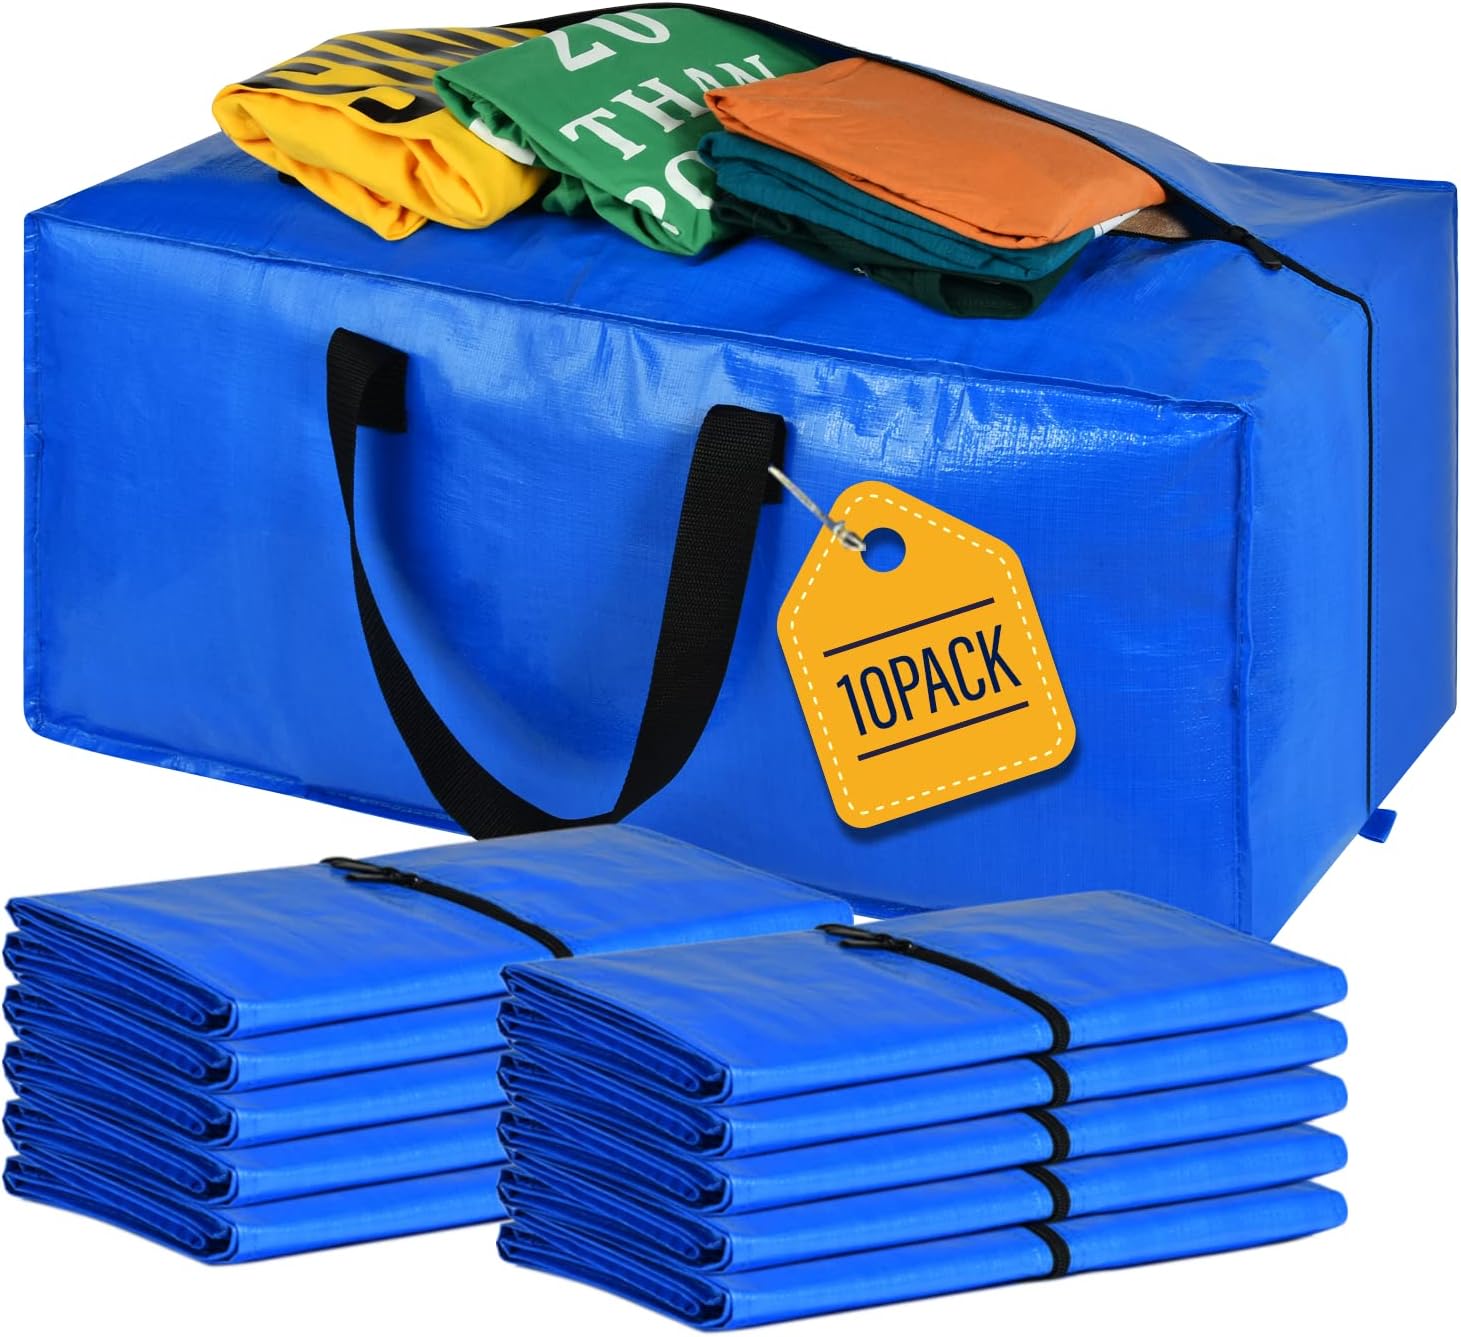 Borse per traslochi, grandi sacchi portaoggetti alternativi alle scatole  per traslochi, forniture per traslochi per l'imballaggio, 10 confezioni